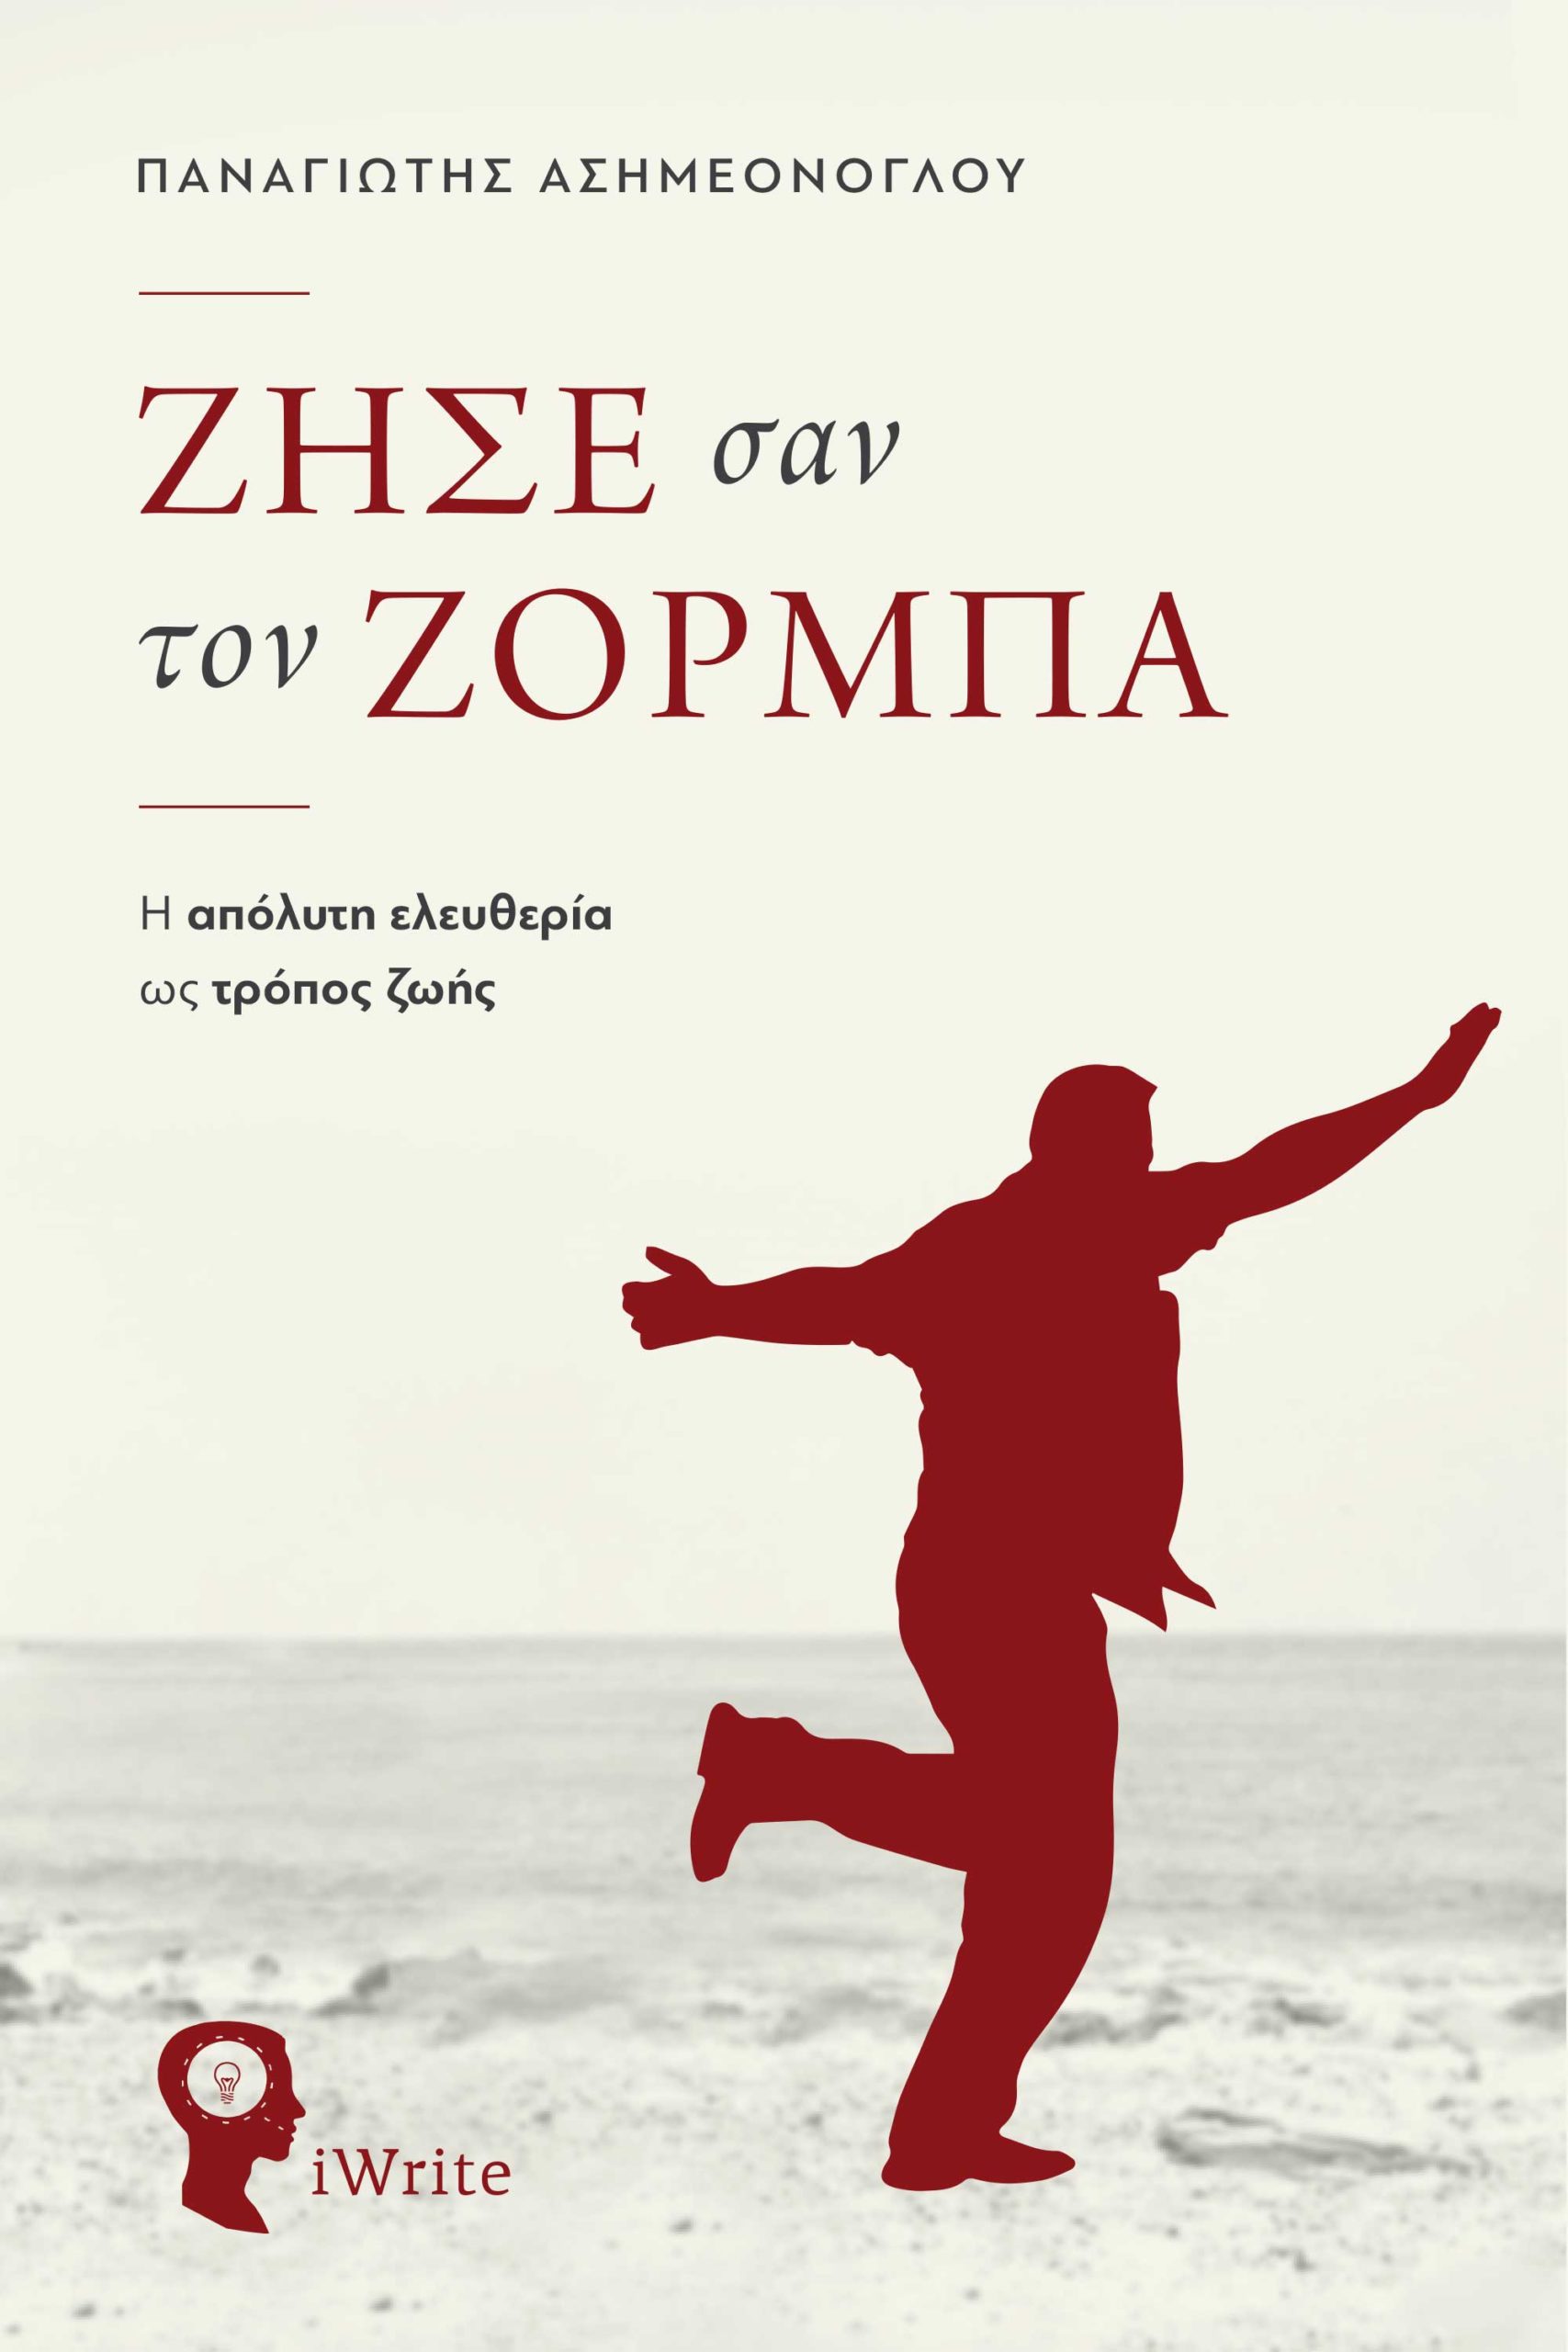 zise-san-ton-zorba-filosofia-eleftheria-ekdoseis-iwrite-1-scaled